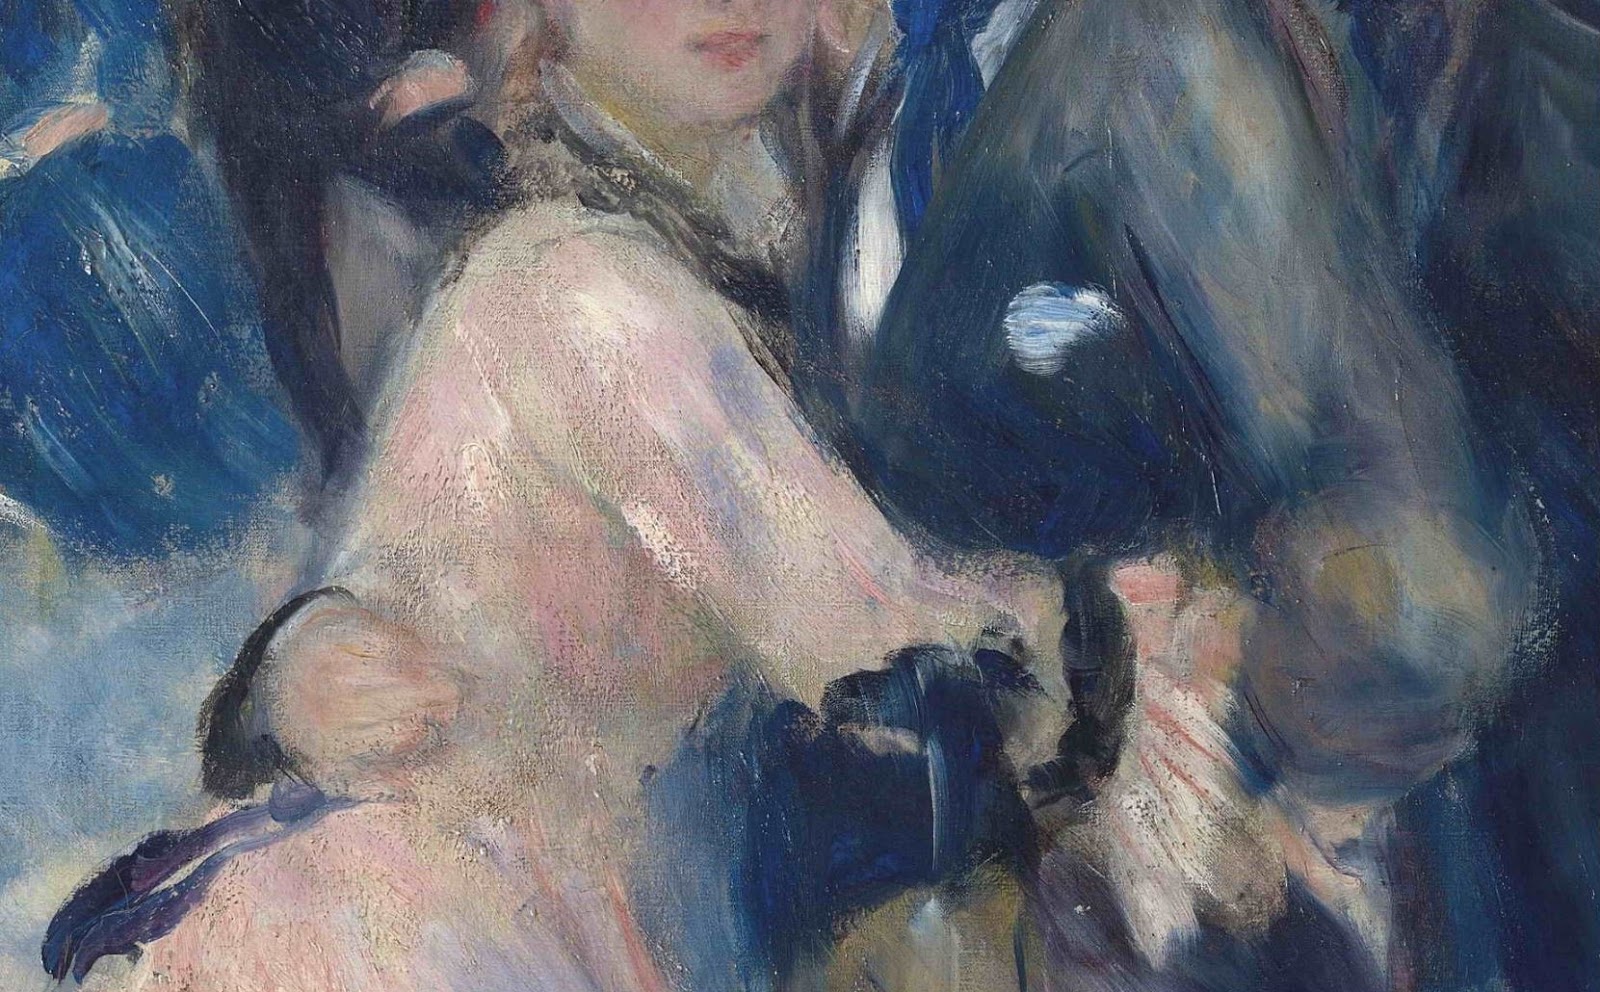 Pierre+Auguste+Renoir-1841-1-19 (434).JPG